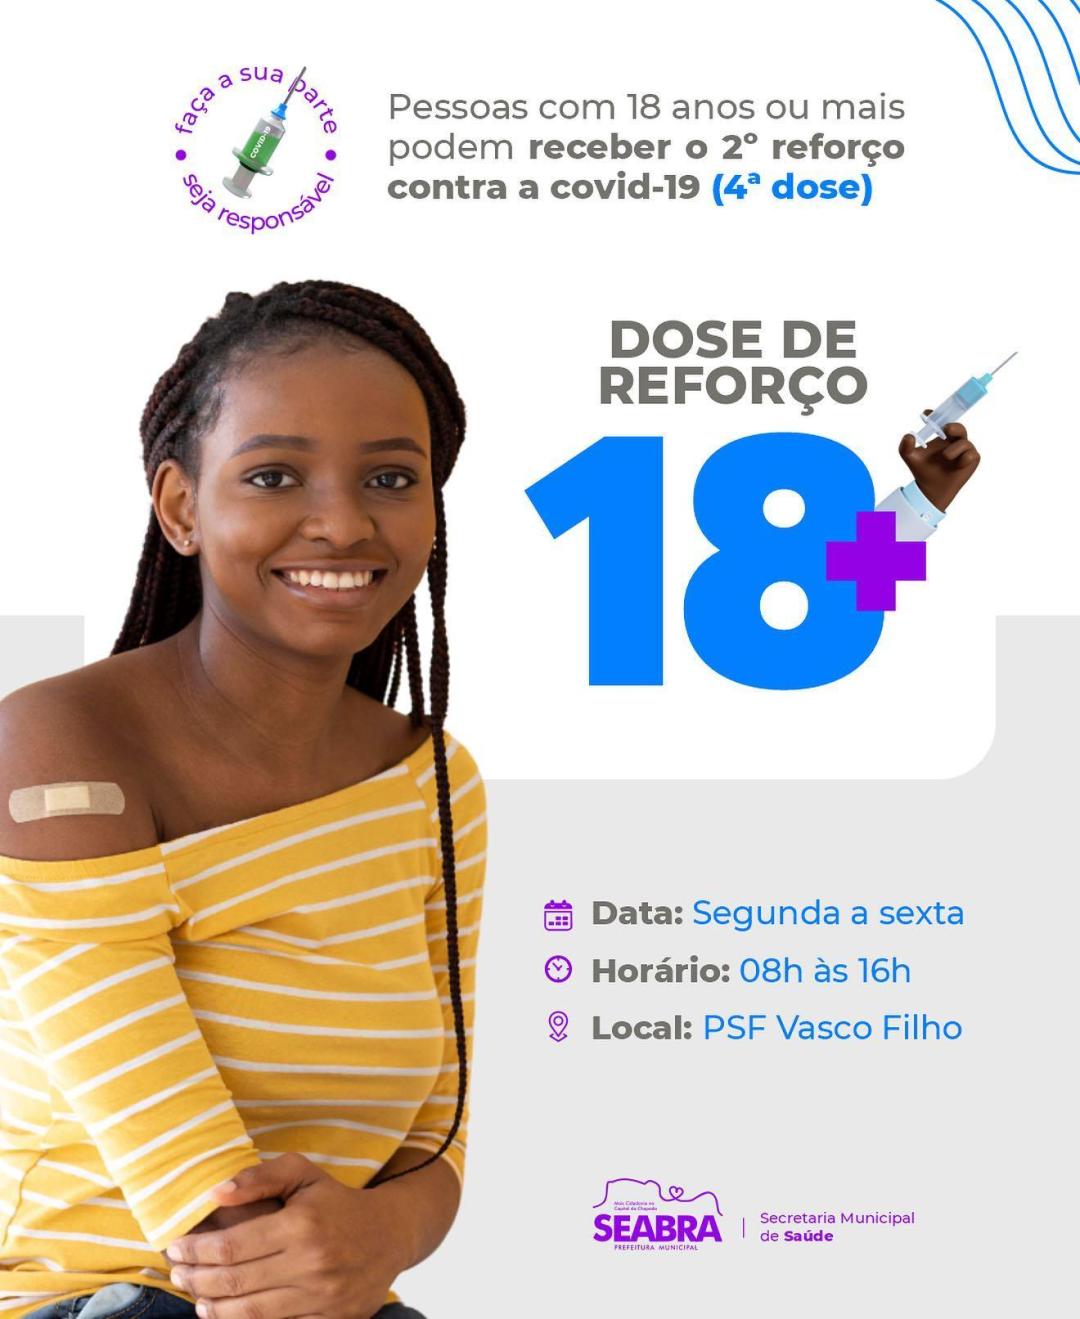 Todas as pessoas com 18 anos acima devem tomar o segundo reforço (quarta dose) da vacina contra a COVID.